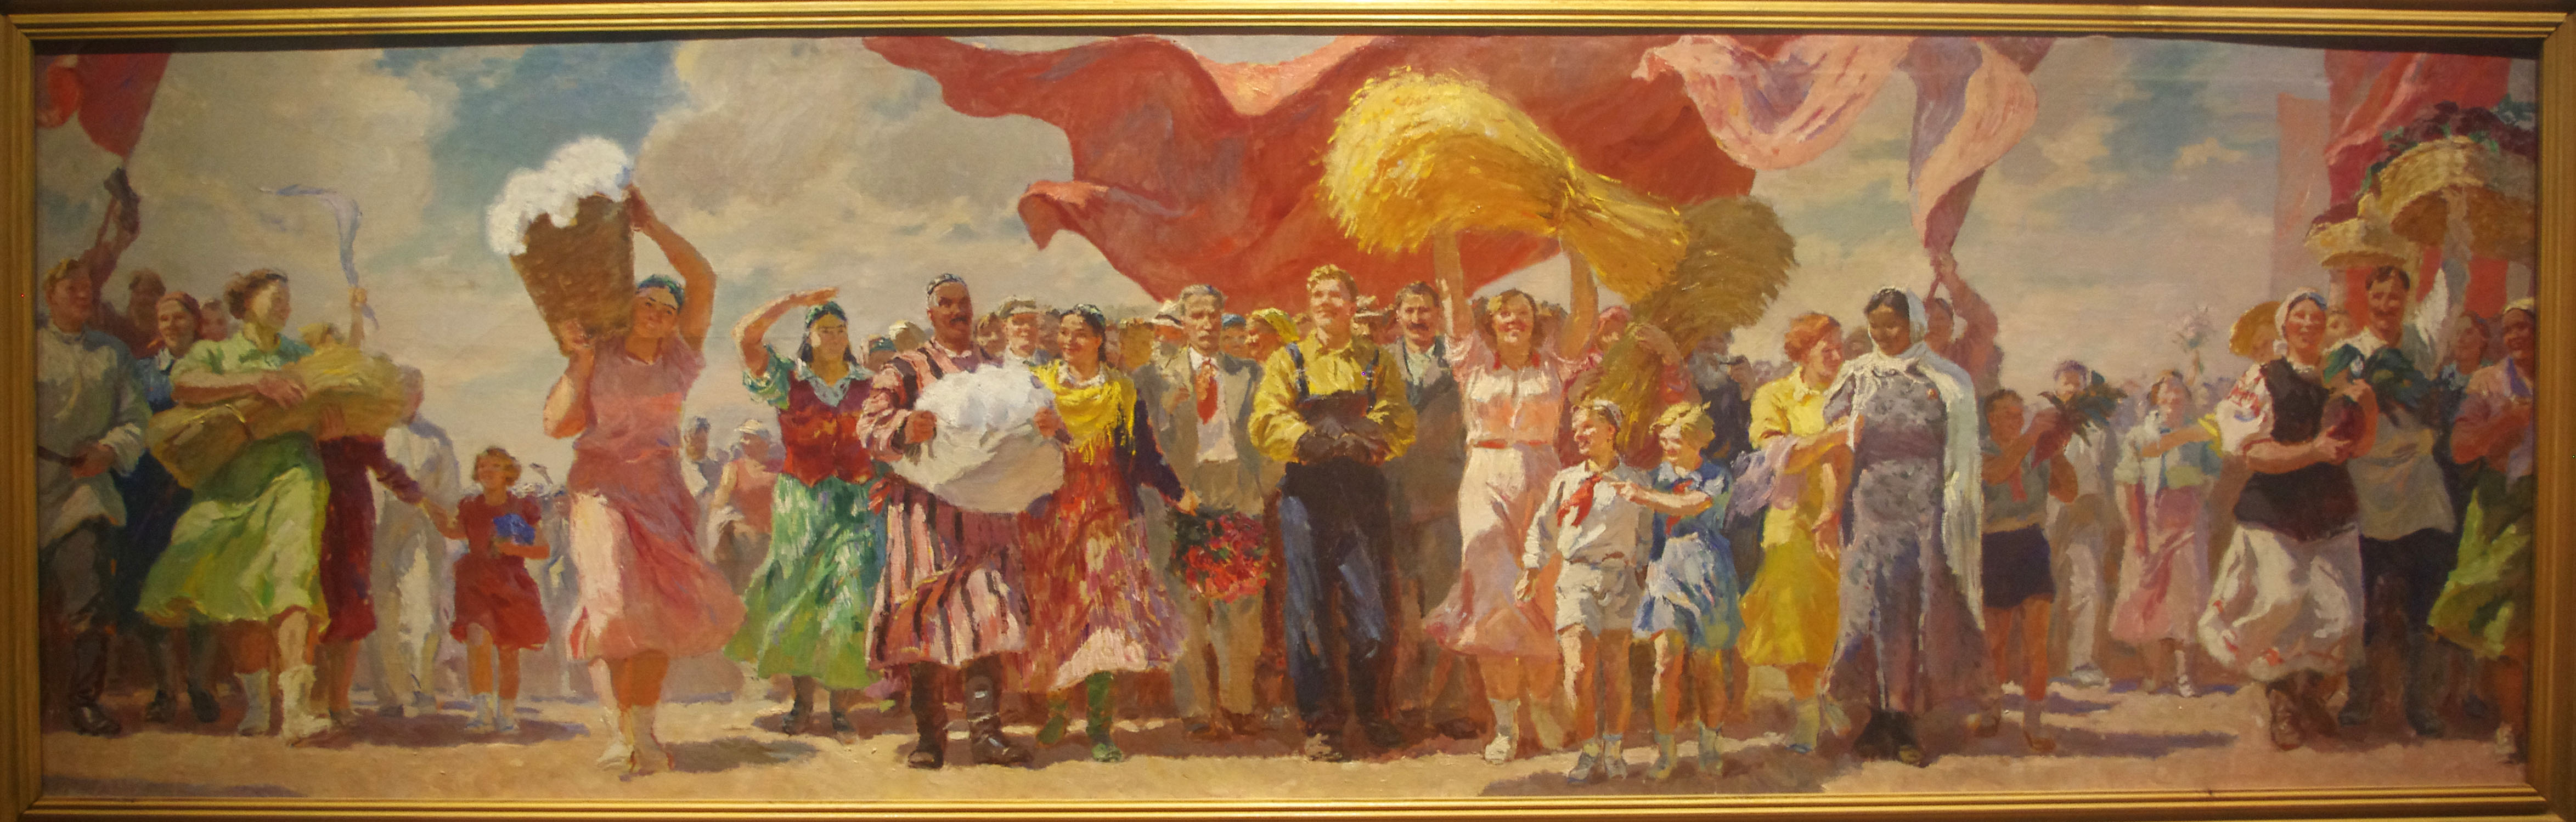 Советское искусство в 30 годы. Социалистический реализм (Соцреализм) СССР.